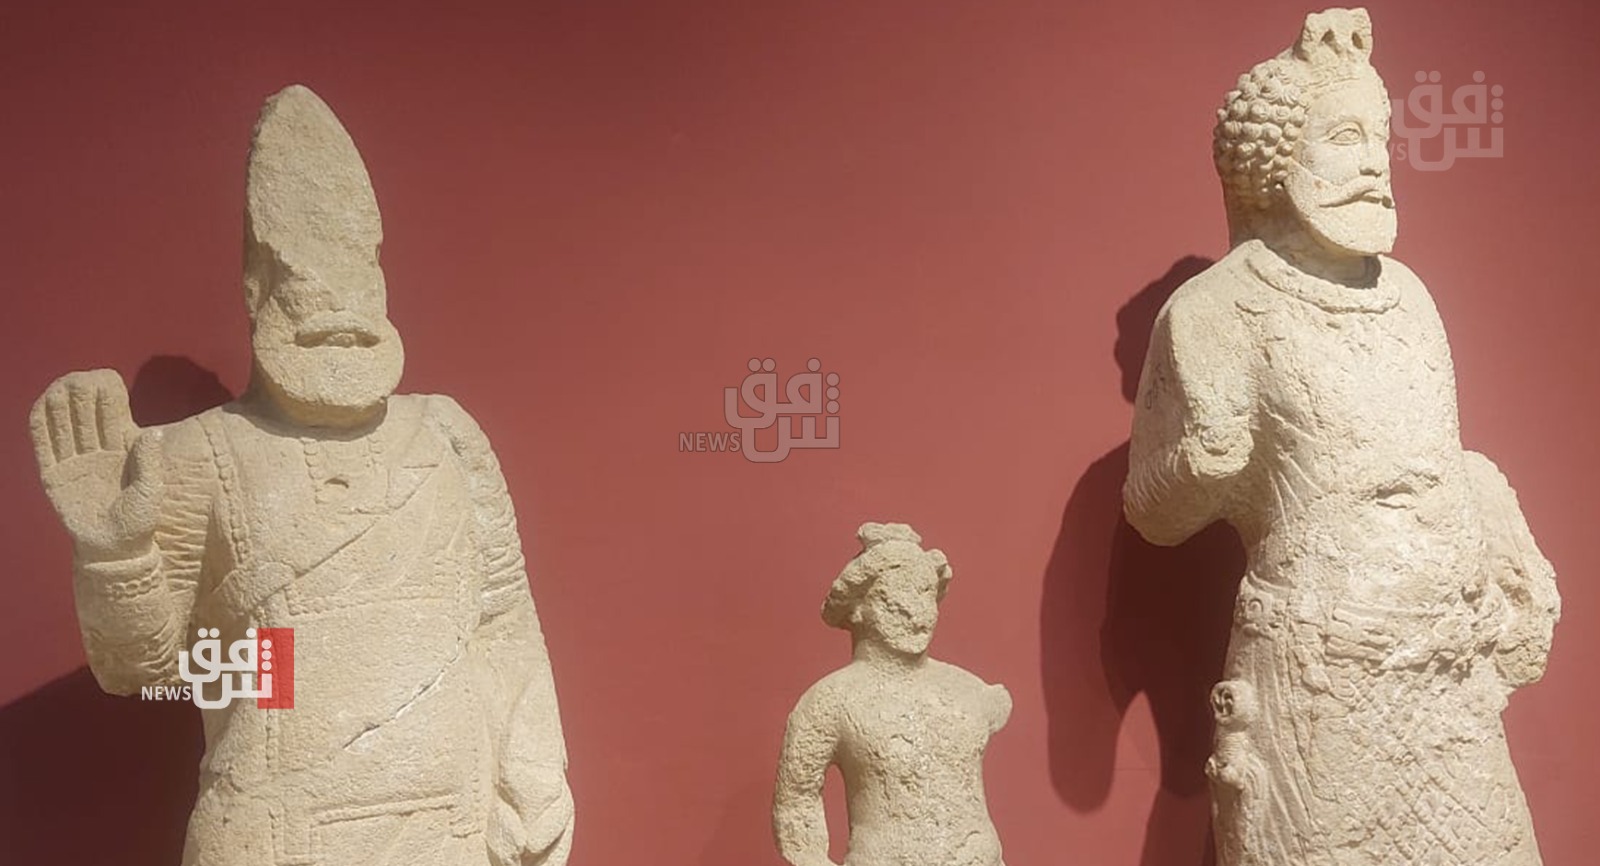 بعد سرقة المتحف البريطاني.. الآثار العراقية تعلق على "الفضيحة" وتكشف عن إجراء